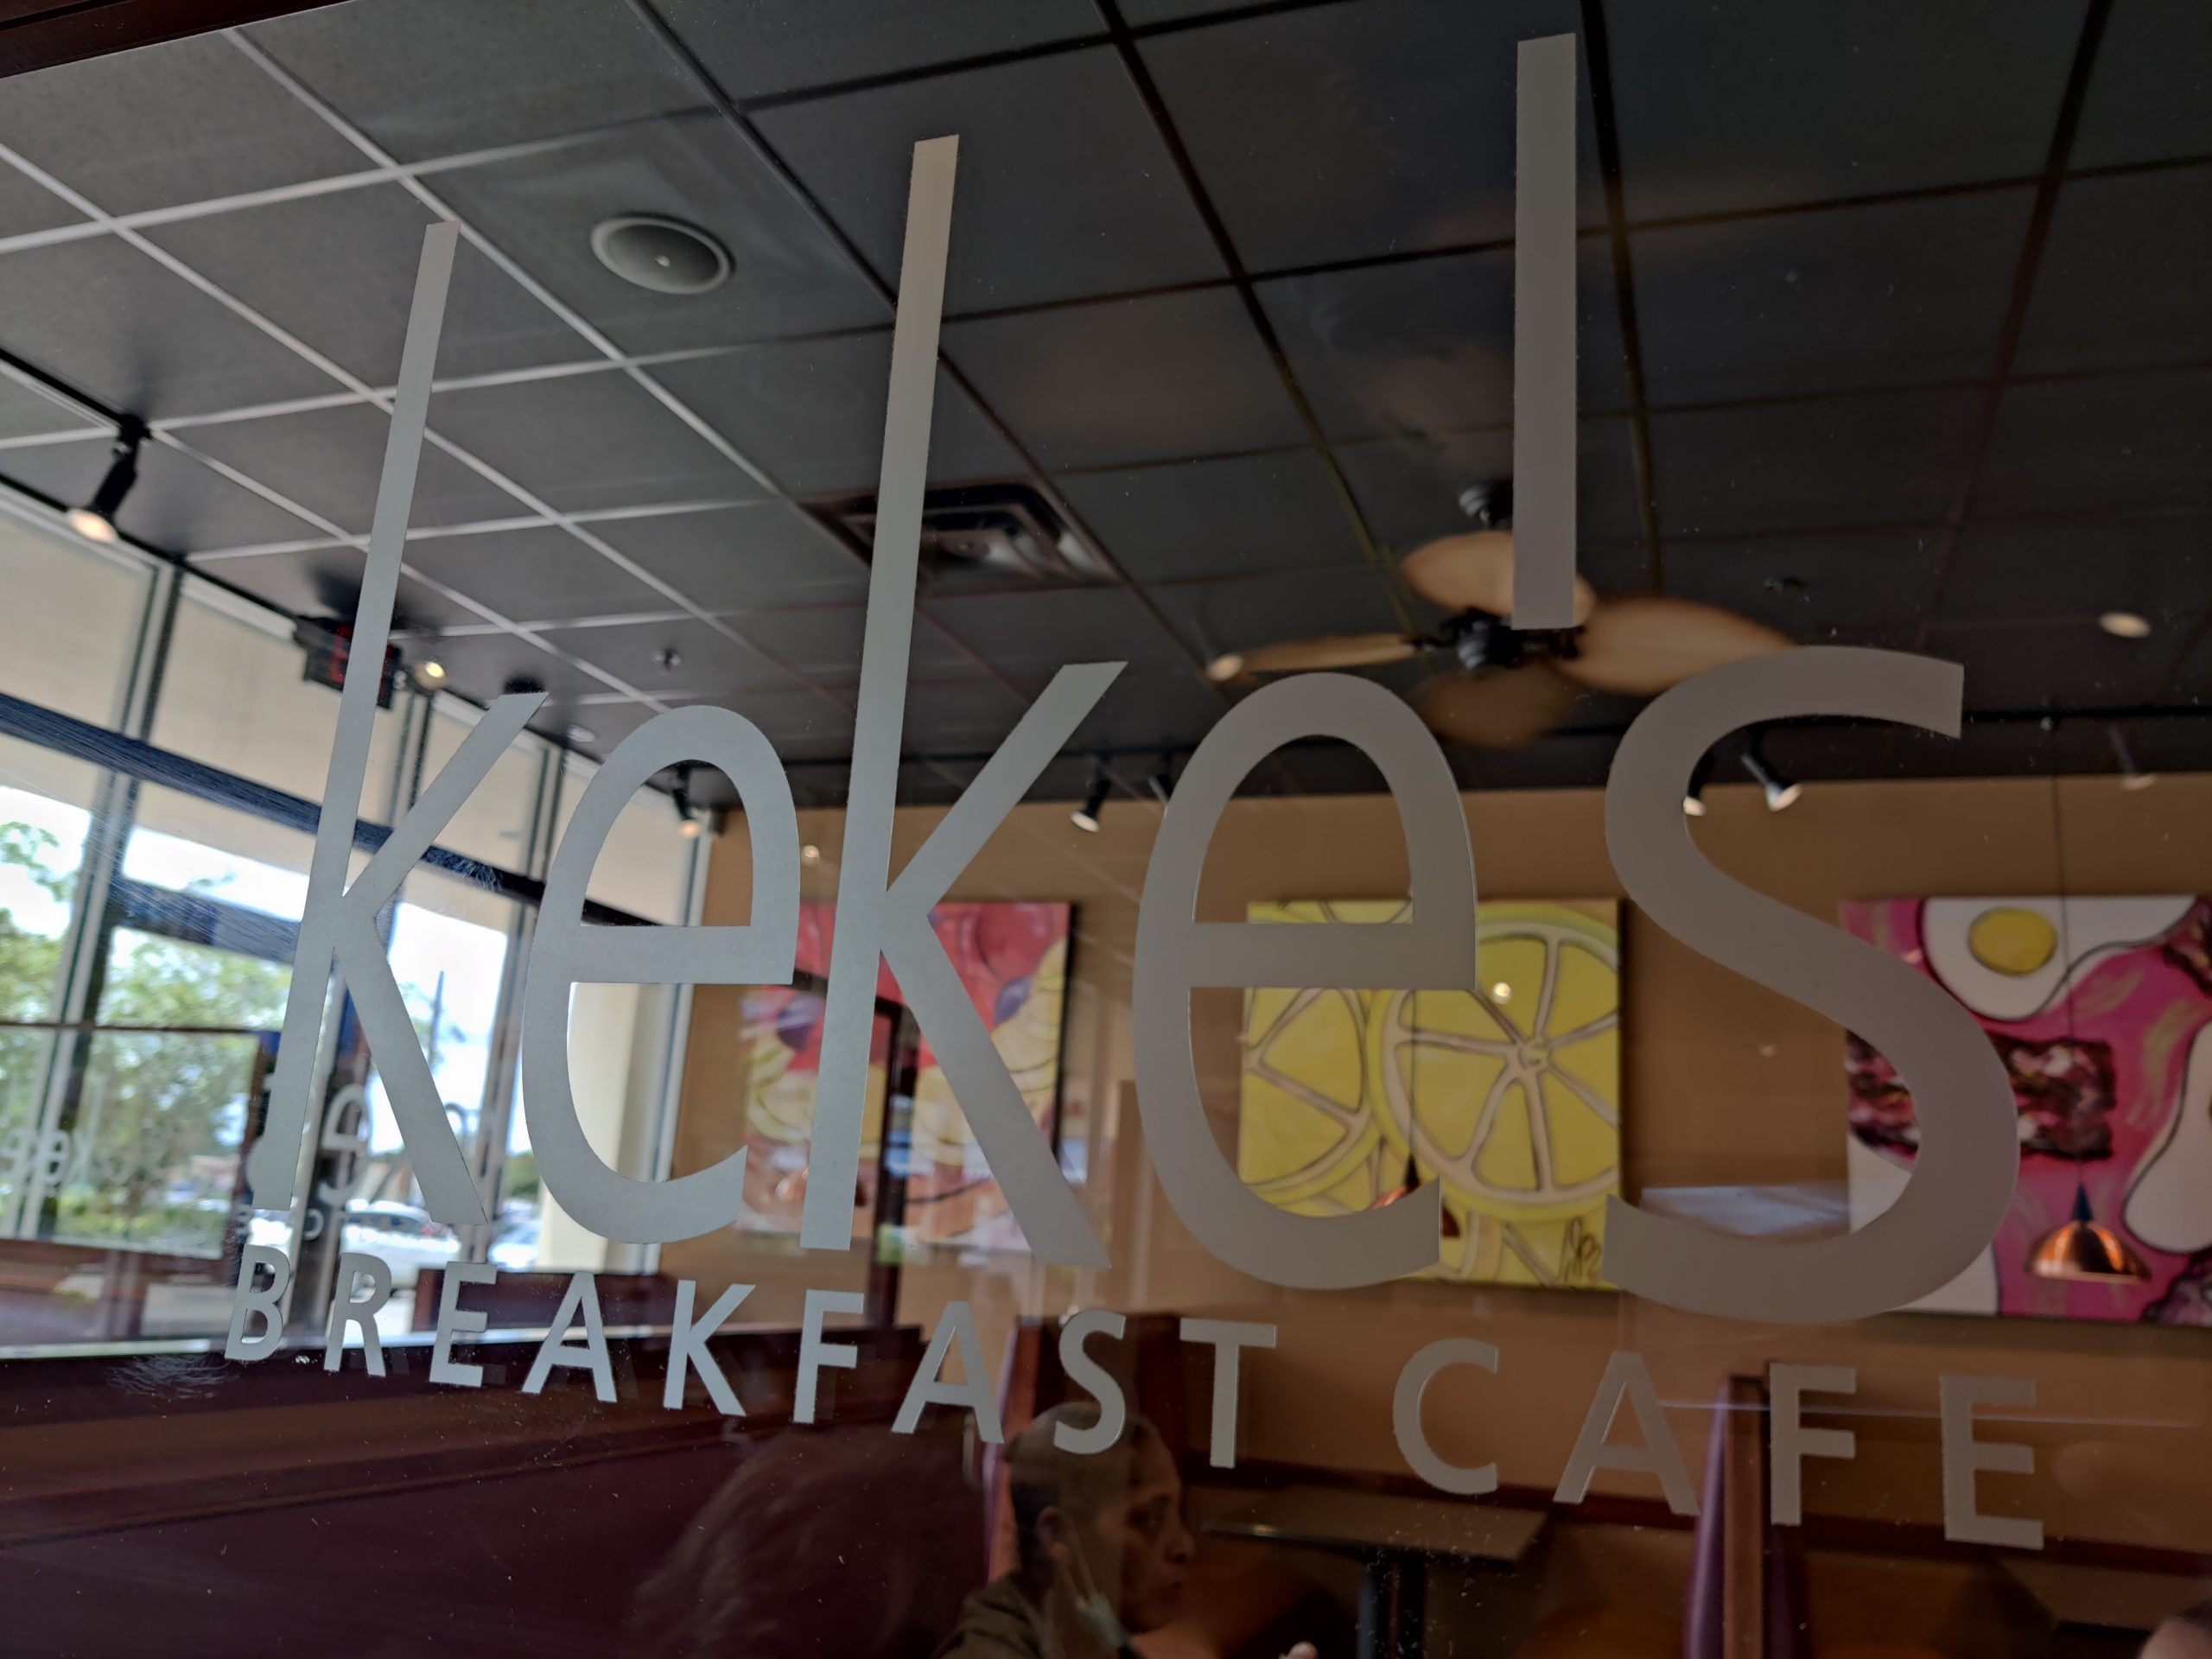 07-10-2021 KeKe's Breakfast Cafe